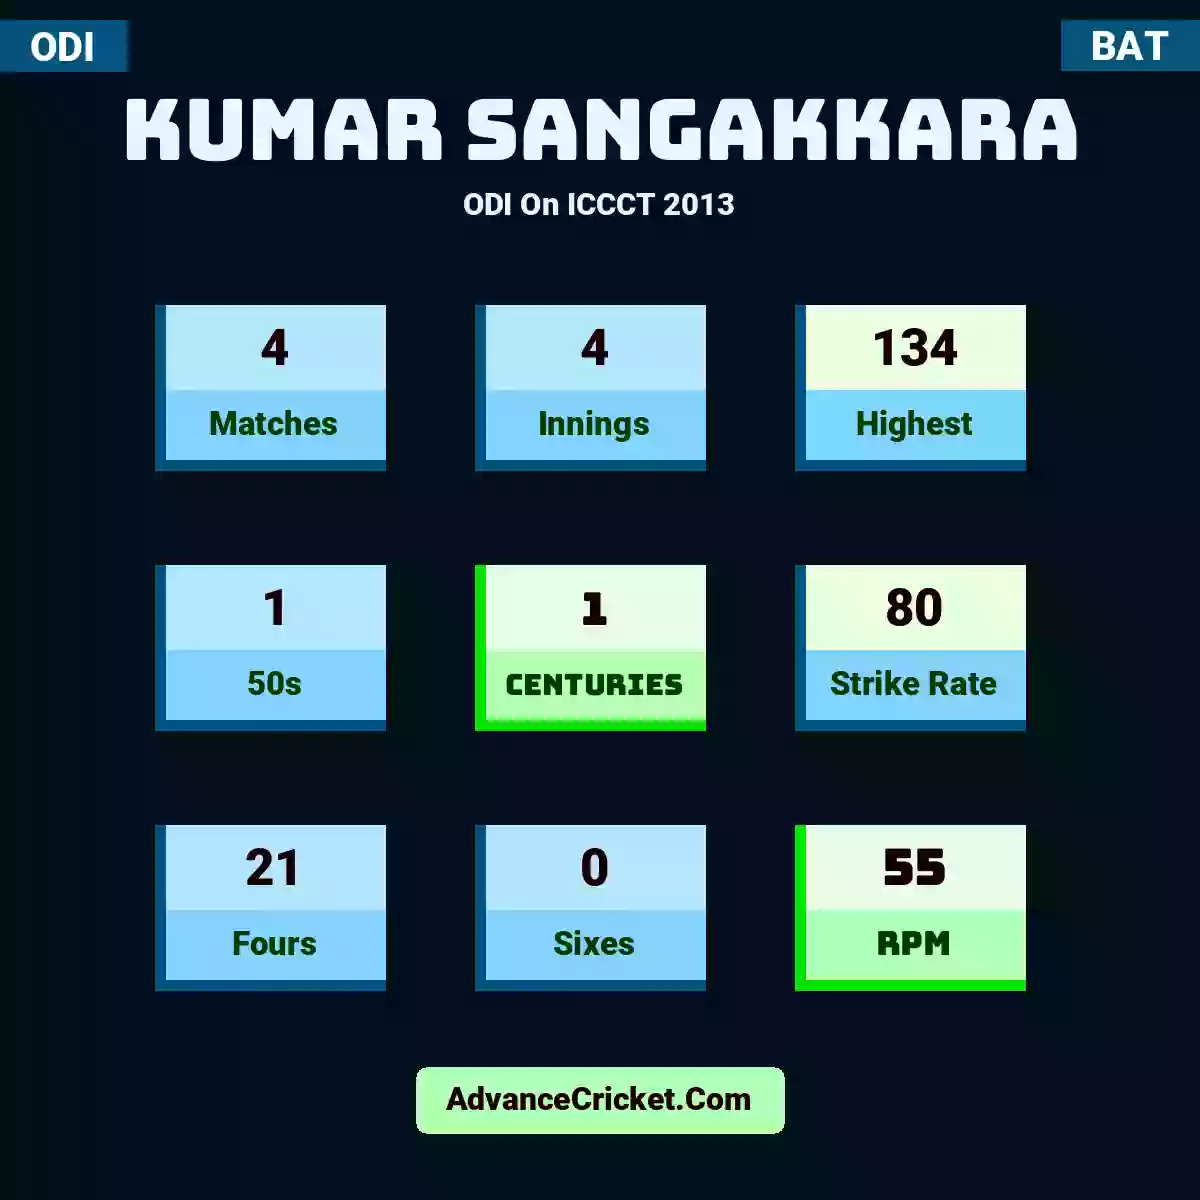 Kumar Sangakkara ODI  On ICCCT 2013, Kumar Sangakkara played 4 matches, scored 134 runs as highest, 1 half-centuries, and 1 centuries, with a strike rate of 80. K.Sangakkara hit 21 fours and 0 sixes, with an RPM of 55.